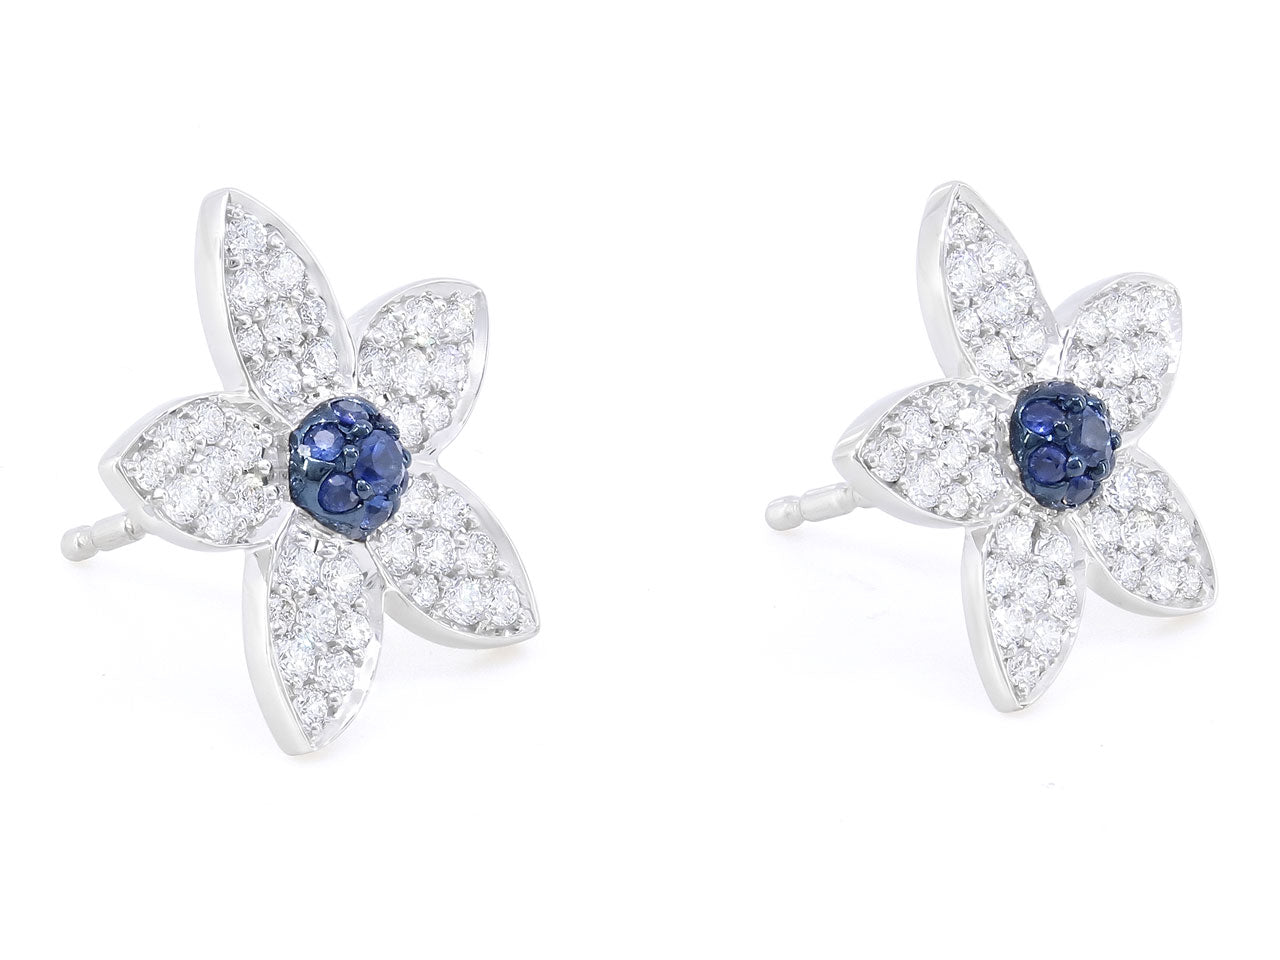 Rhonda Faber Green Diamond and Sapphire Flower Earrings in 18K White Gold